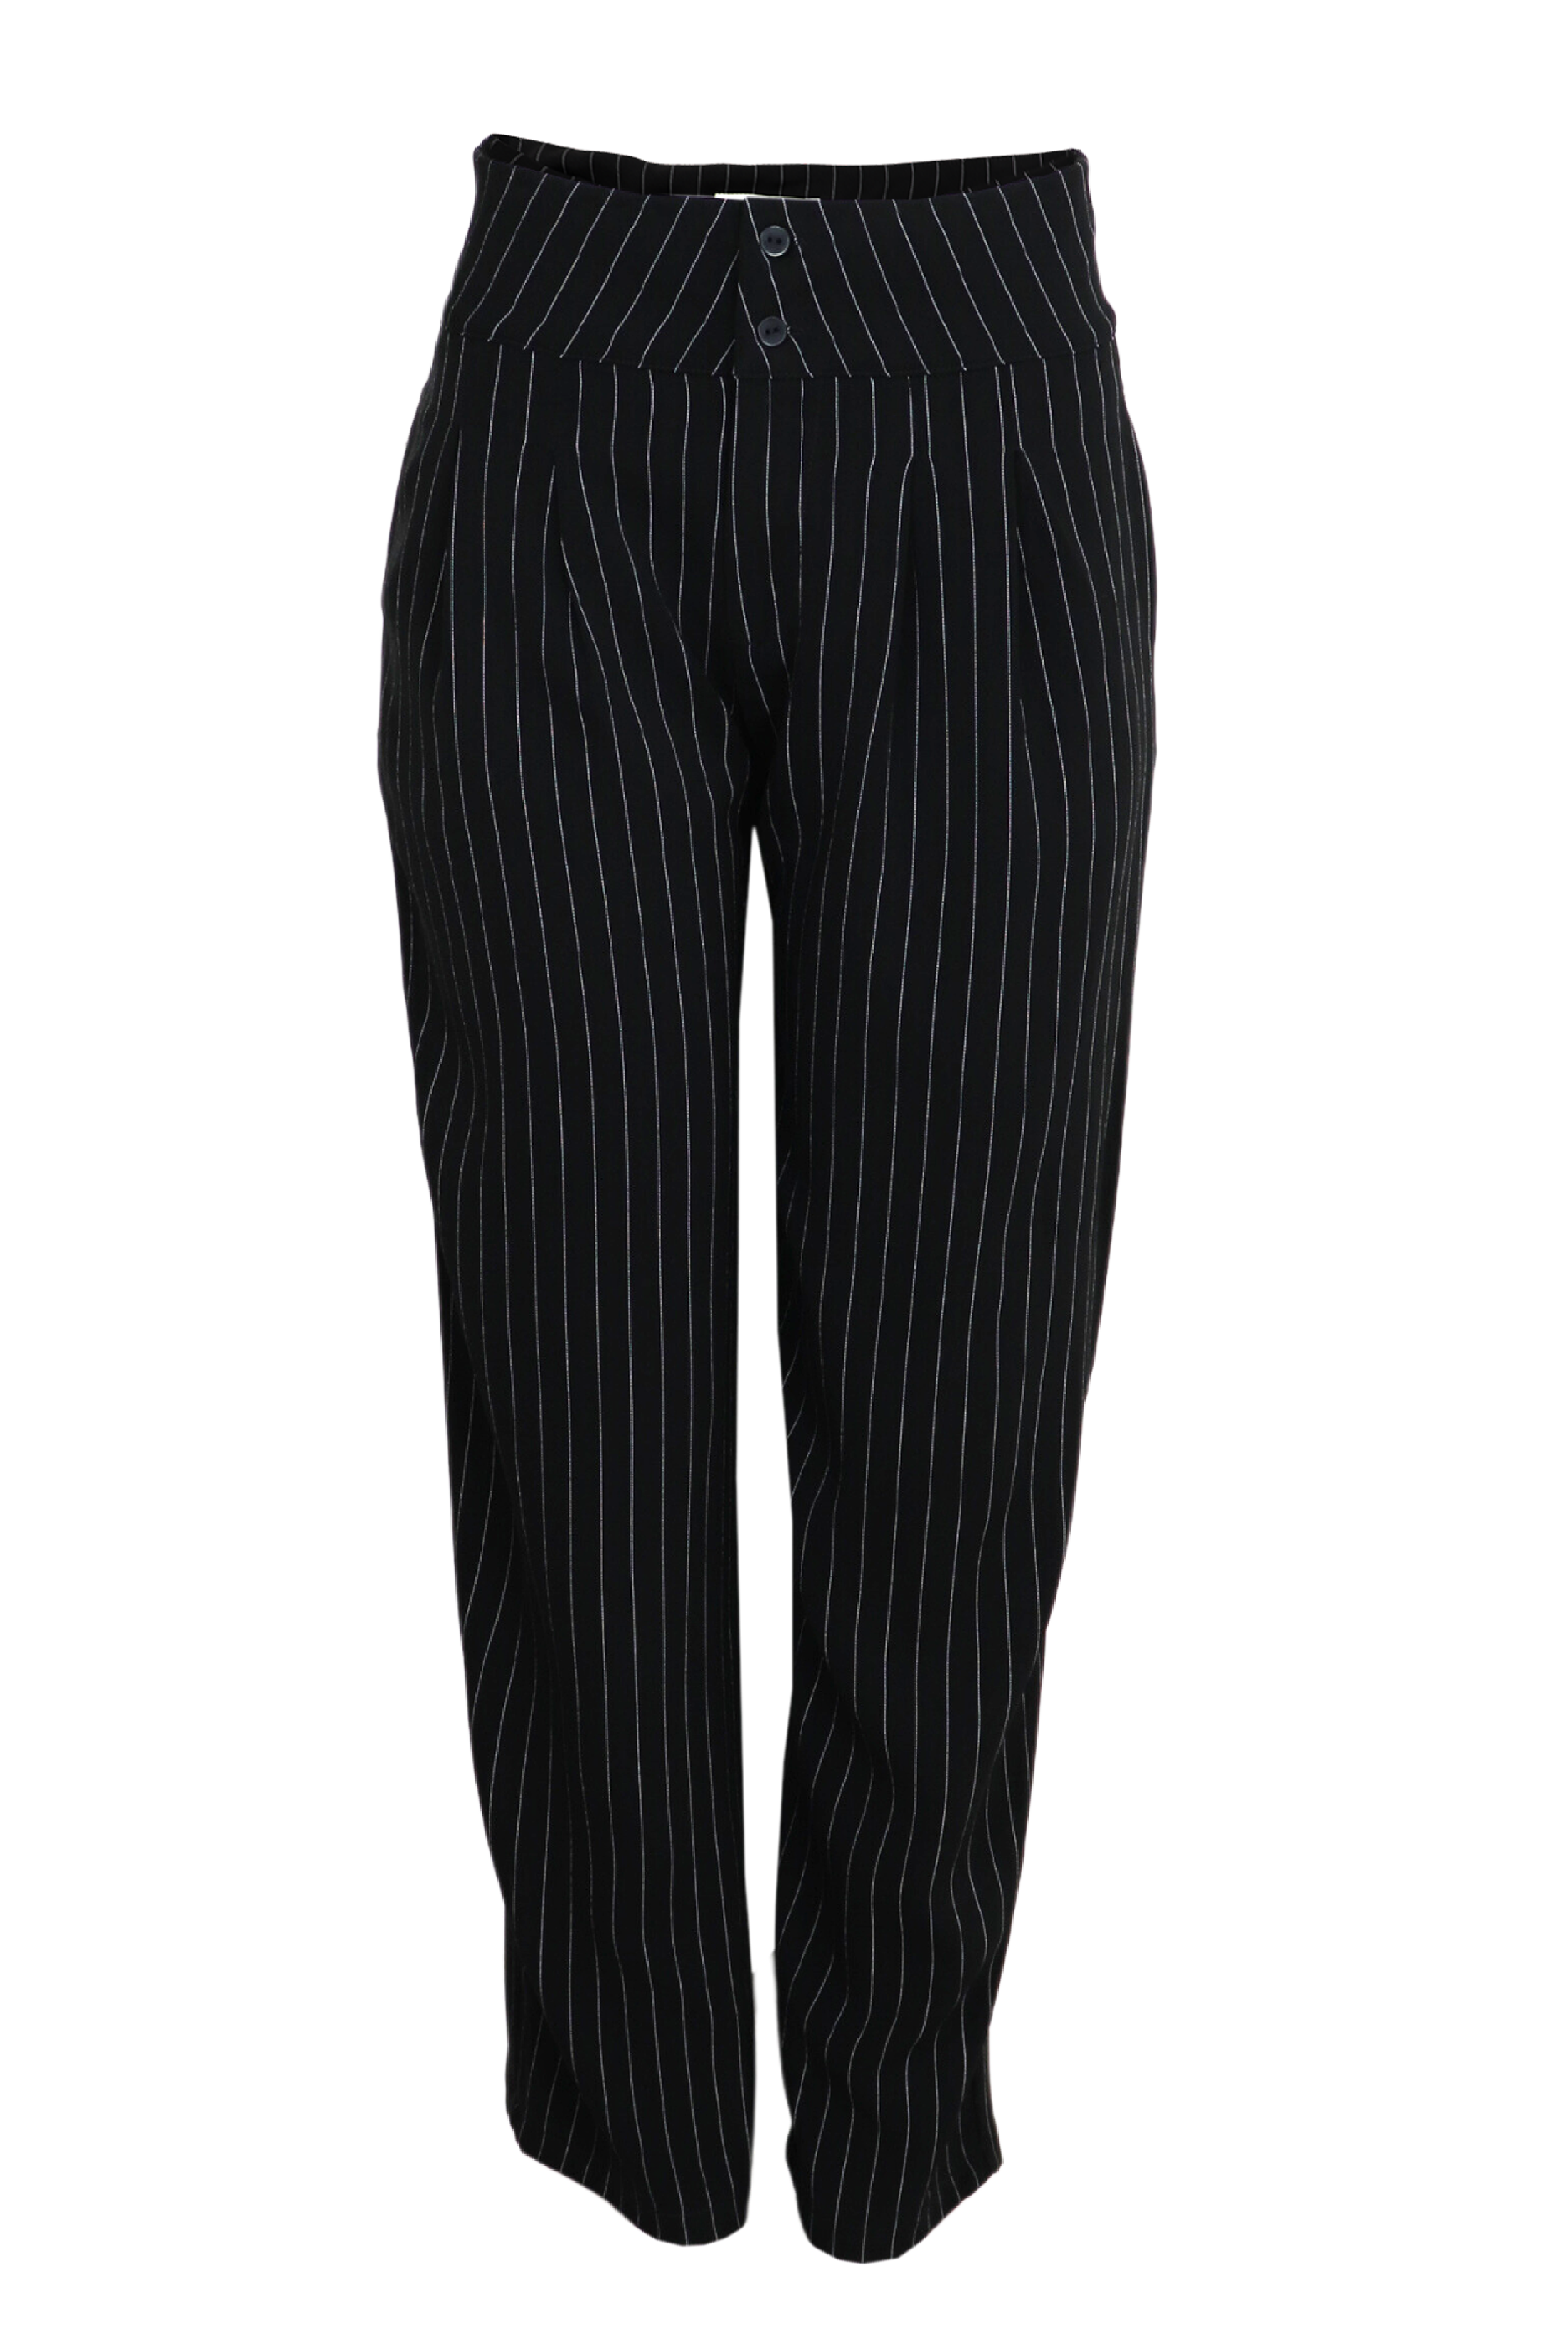 Pantalón bota recta fondo negro con rayas blancas